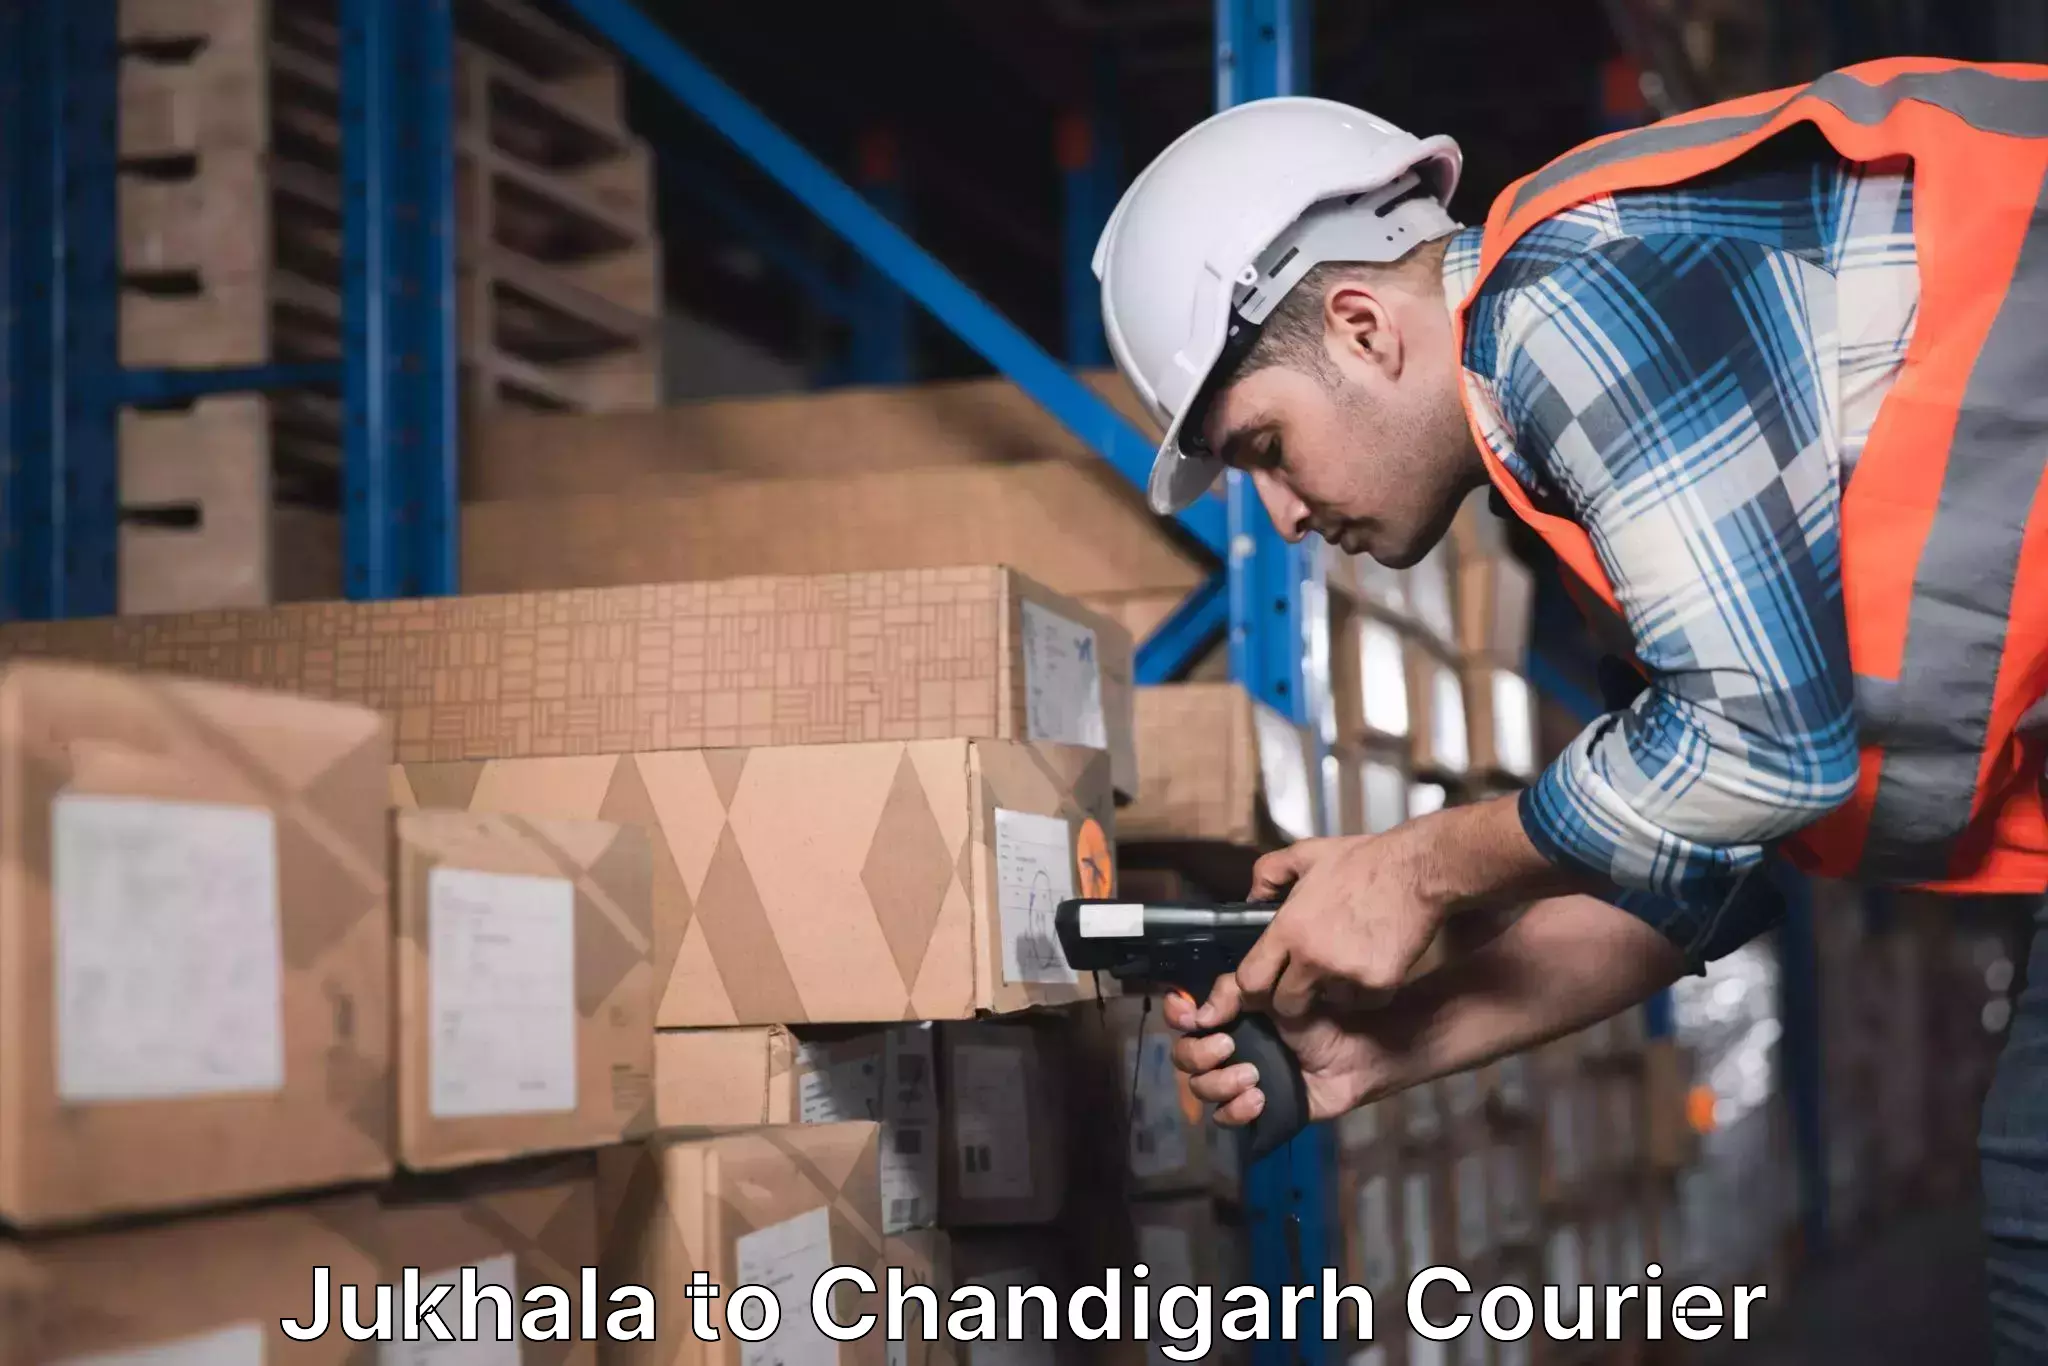 On-call courier service Jukhala to Panjab University Chandigarh